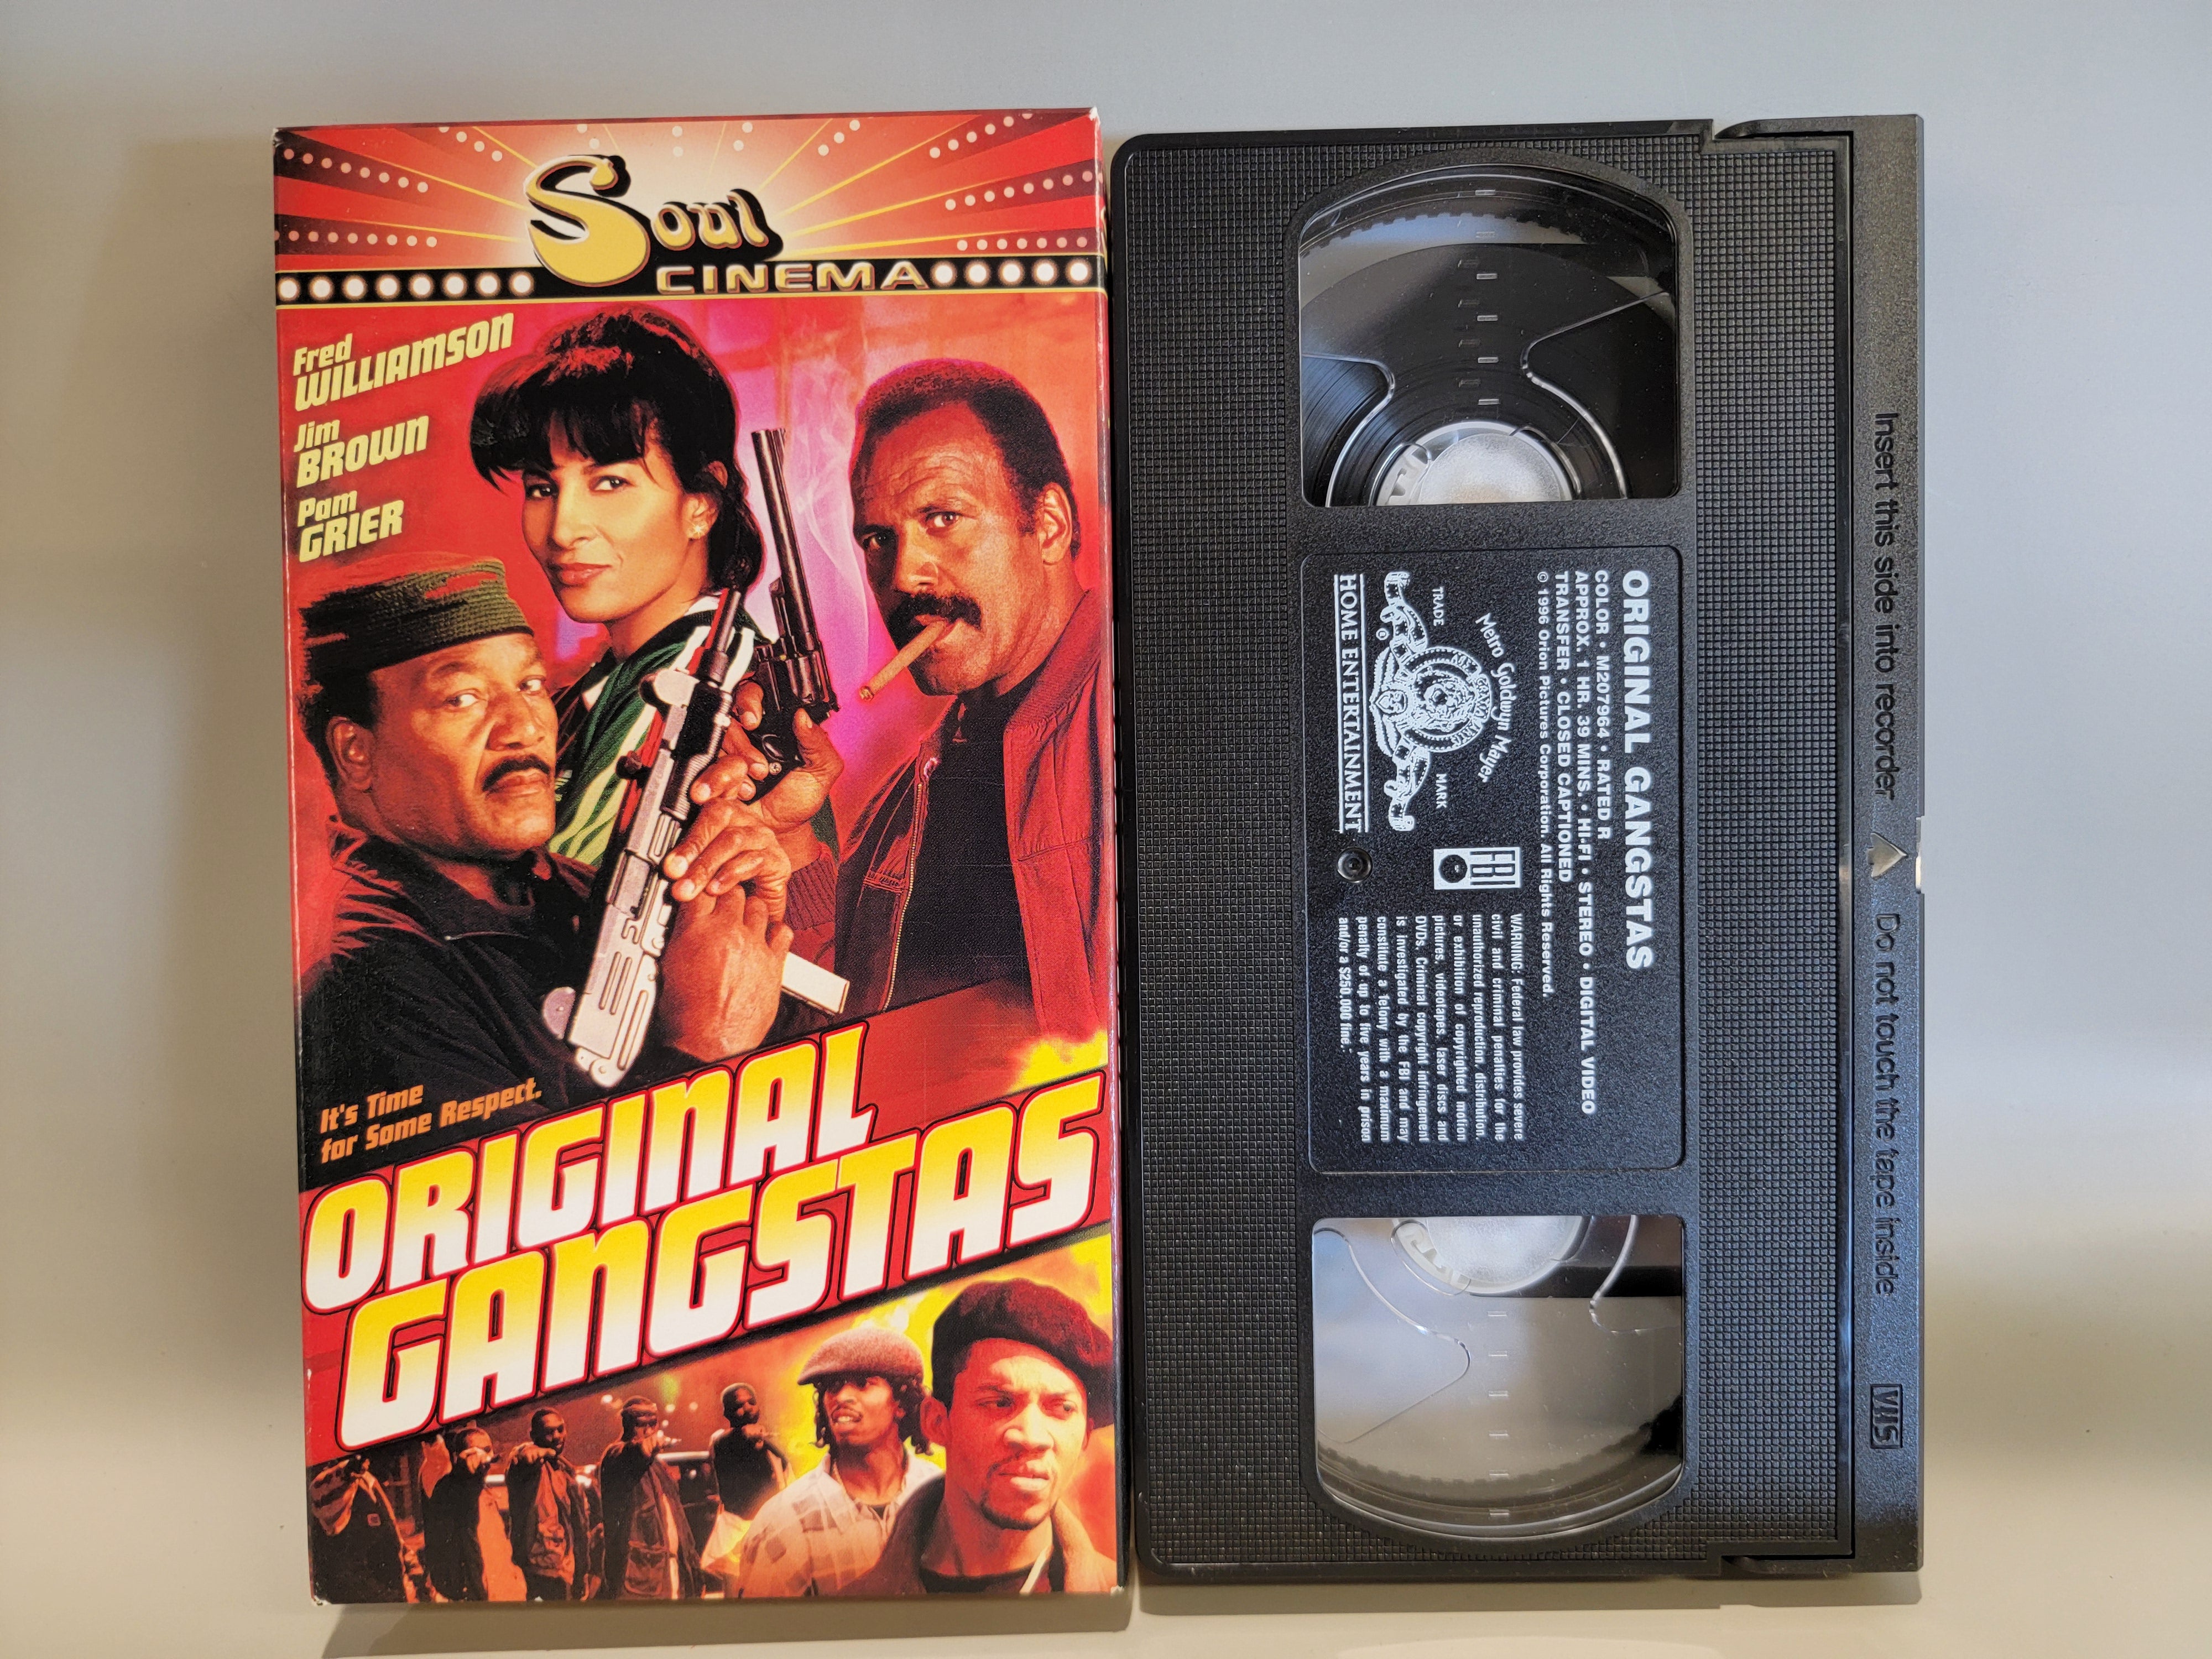 ORIGINAL GANGSTAS VHS [USED]